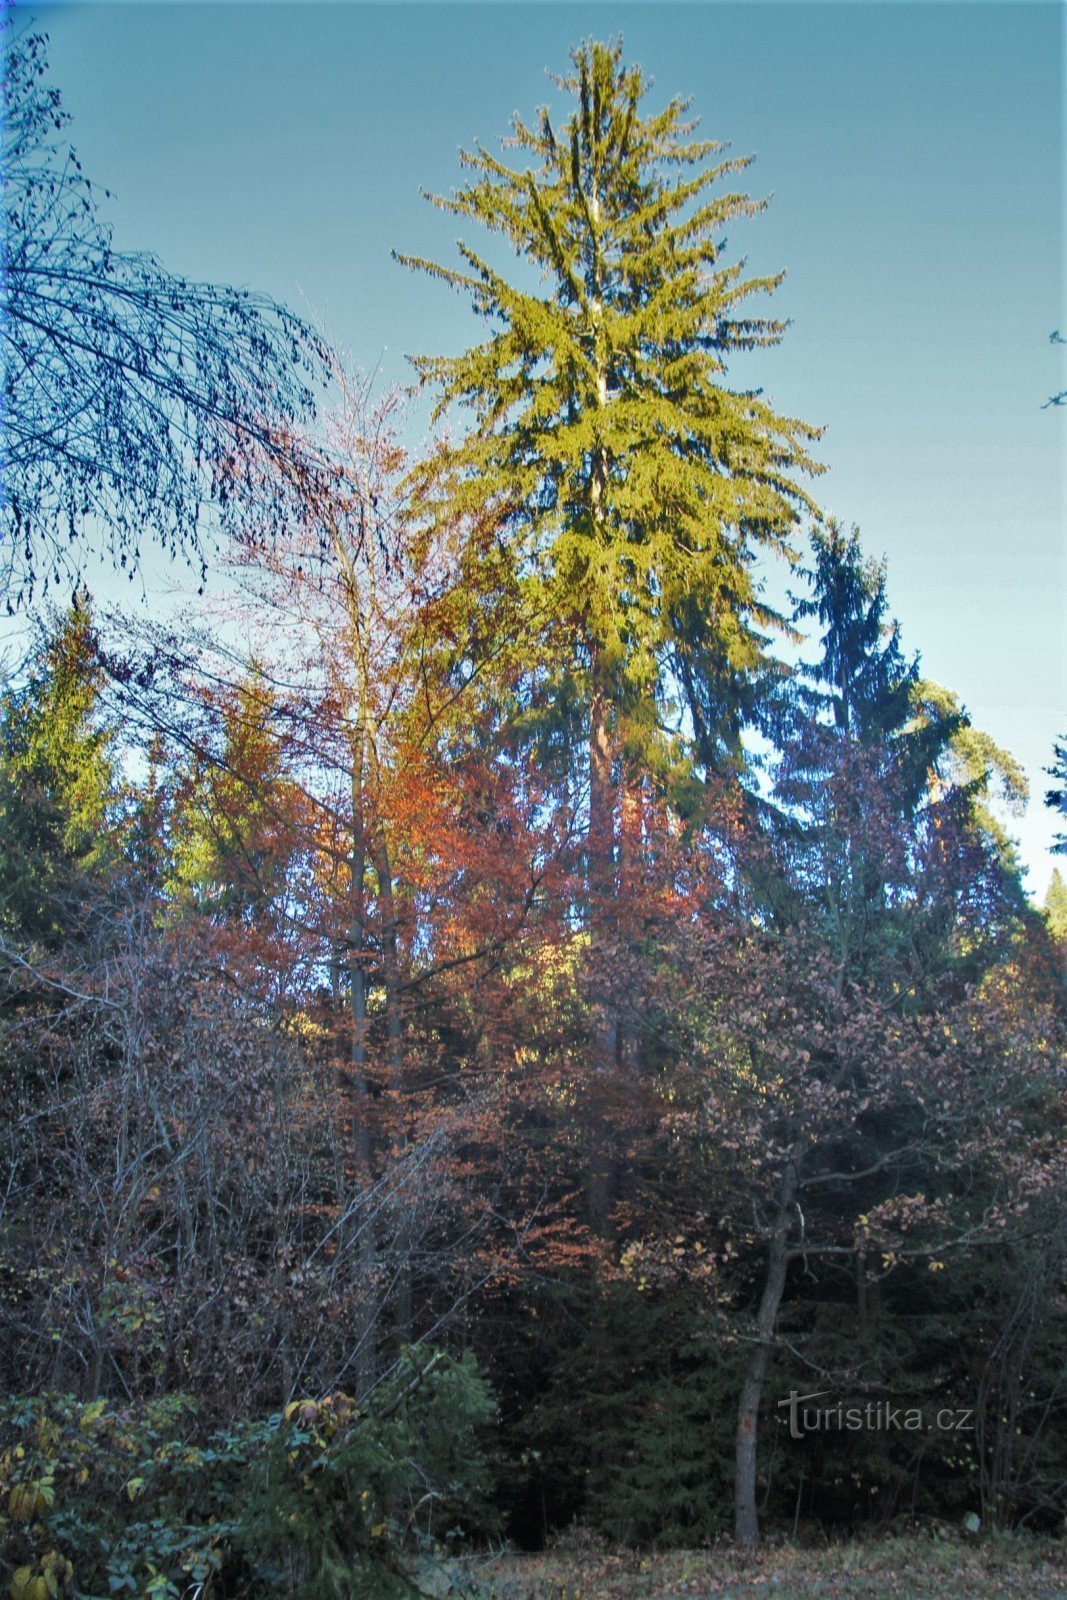 Os troncos de abetos excedem as árvores circundantes em mais de dez metros